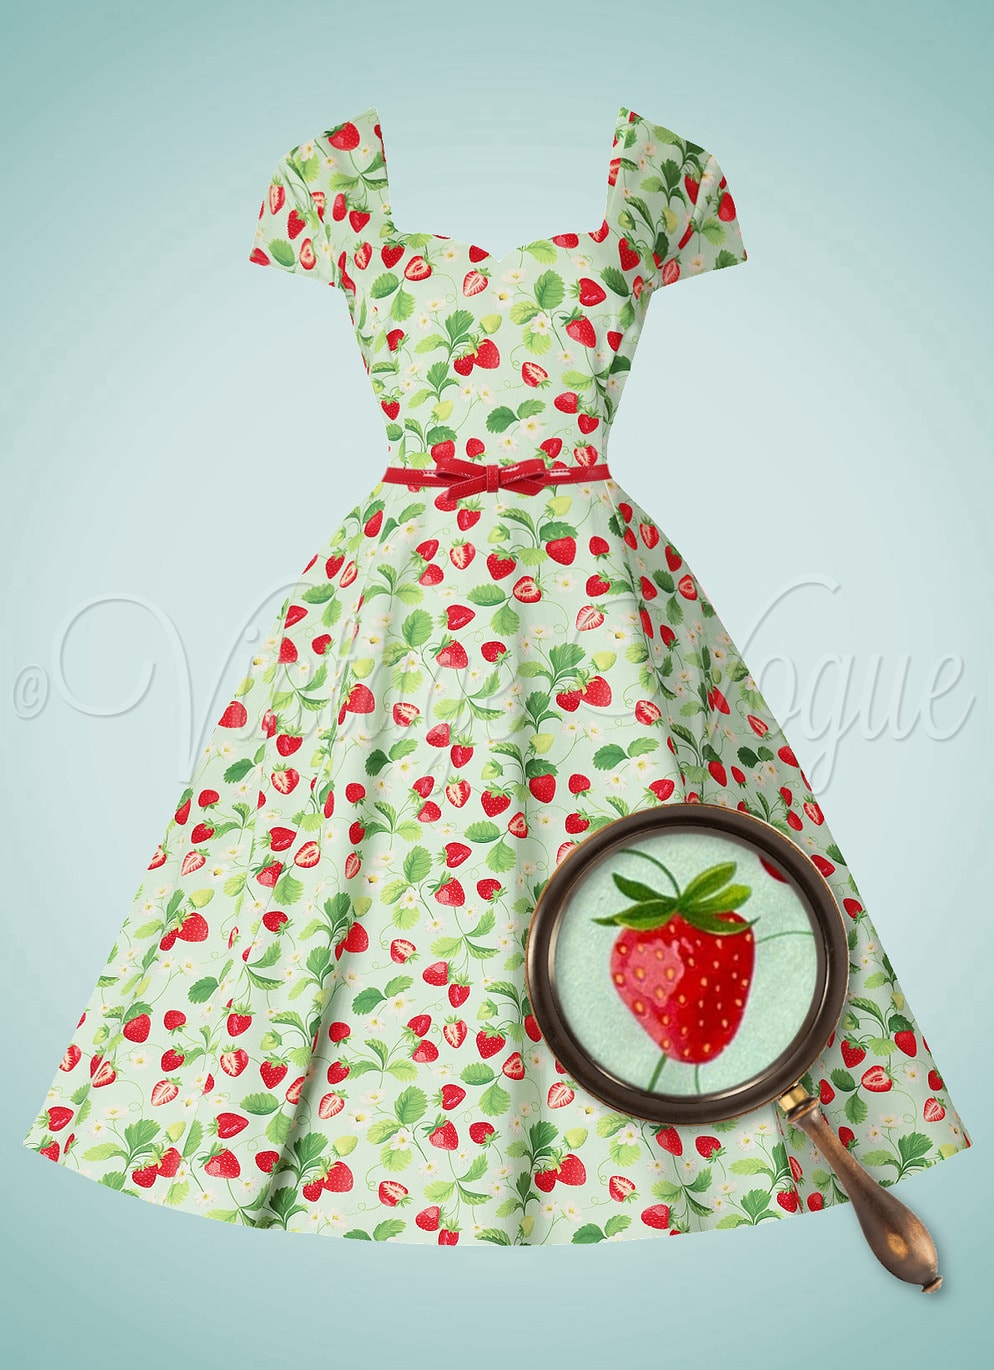 Forever Fifties 50's Pin-Up Retro Erdbeer Swing Kleid Luise Strawberry Dress in Mint Grün 50er Jahre Petticoat Damenkleid Sommerkleid Jive Vintage